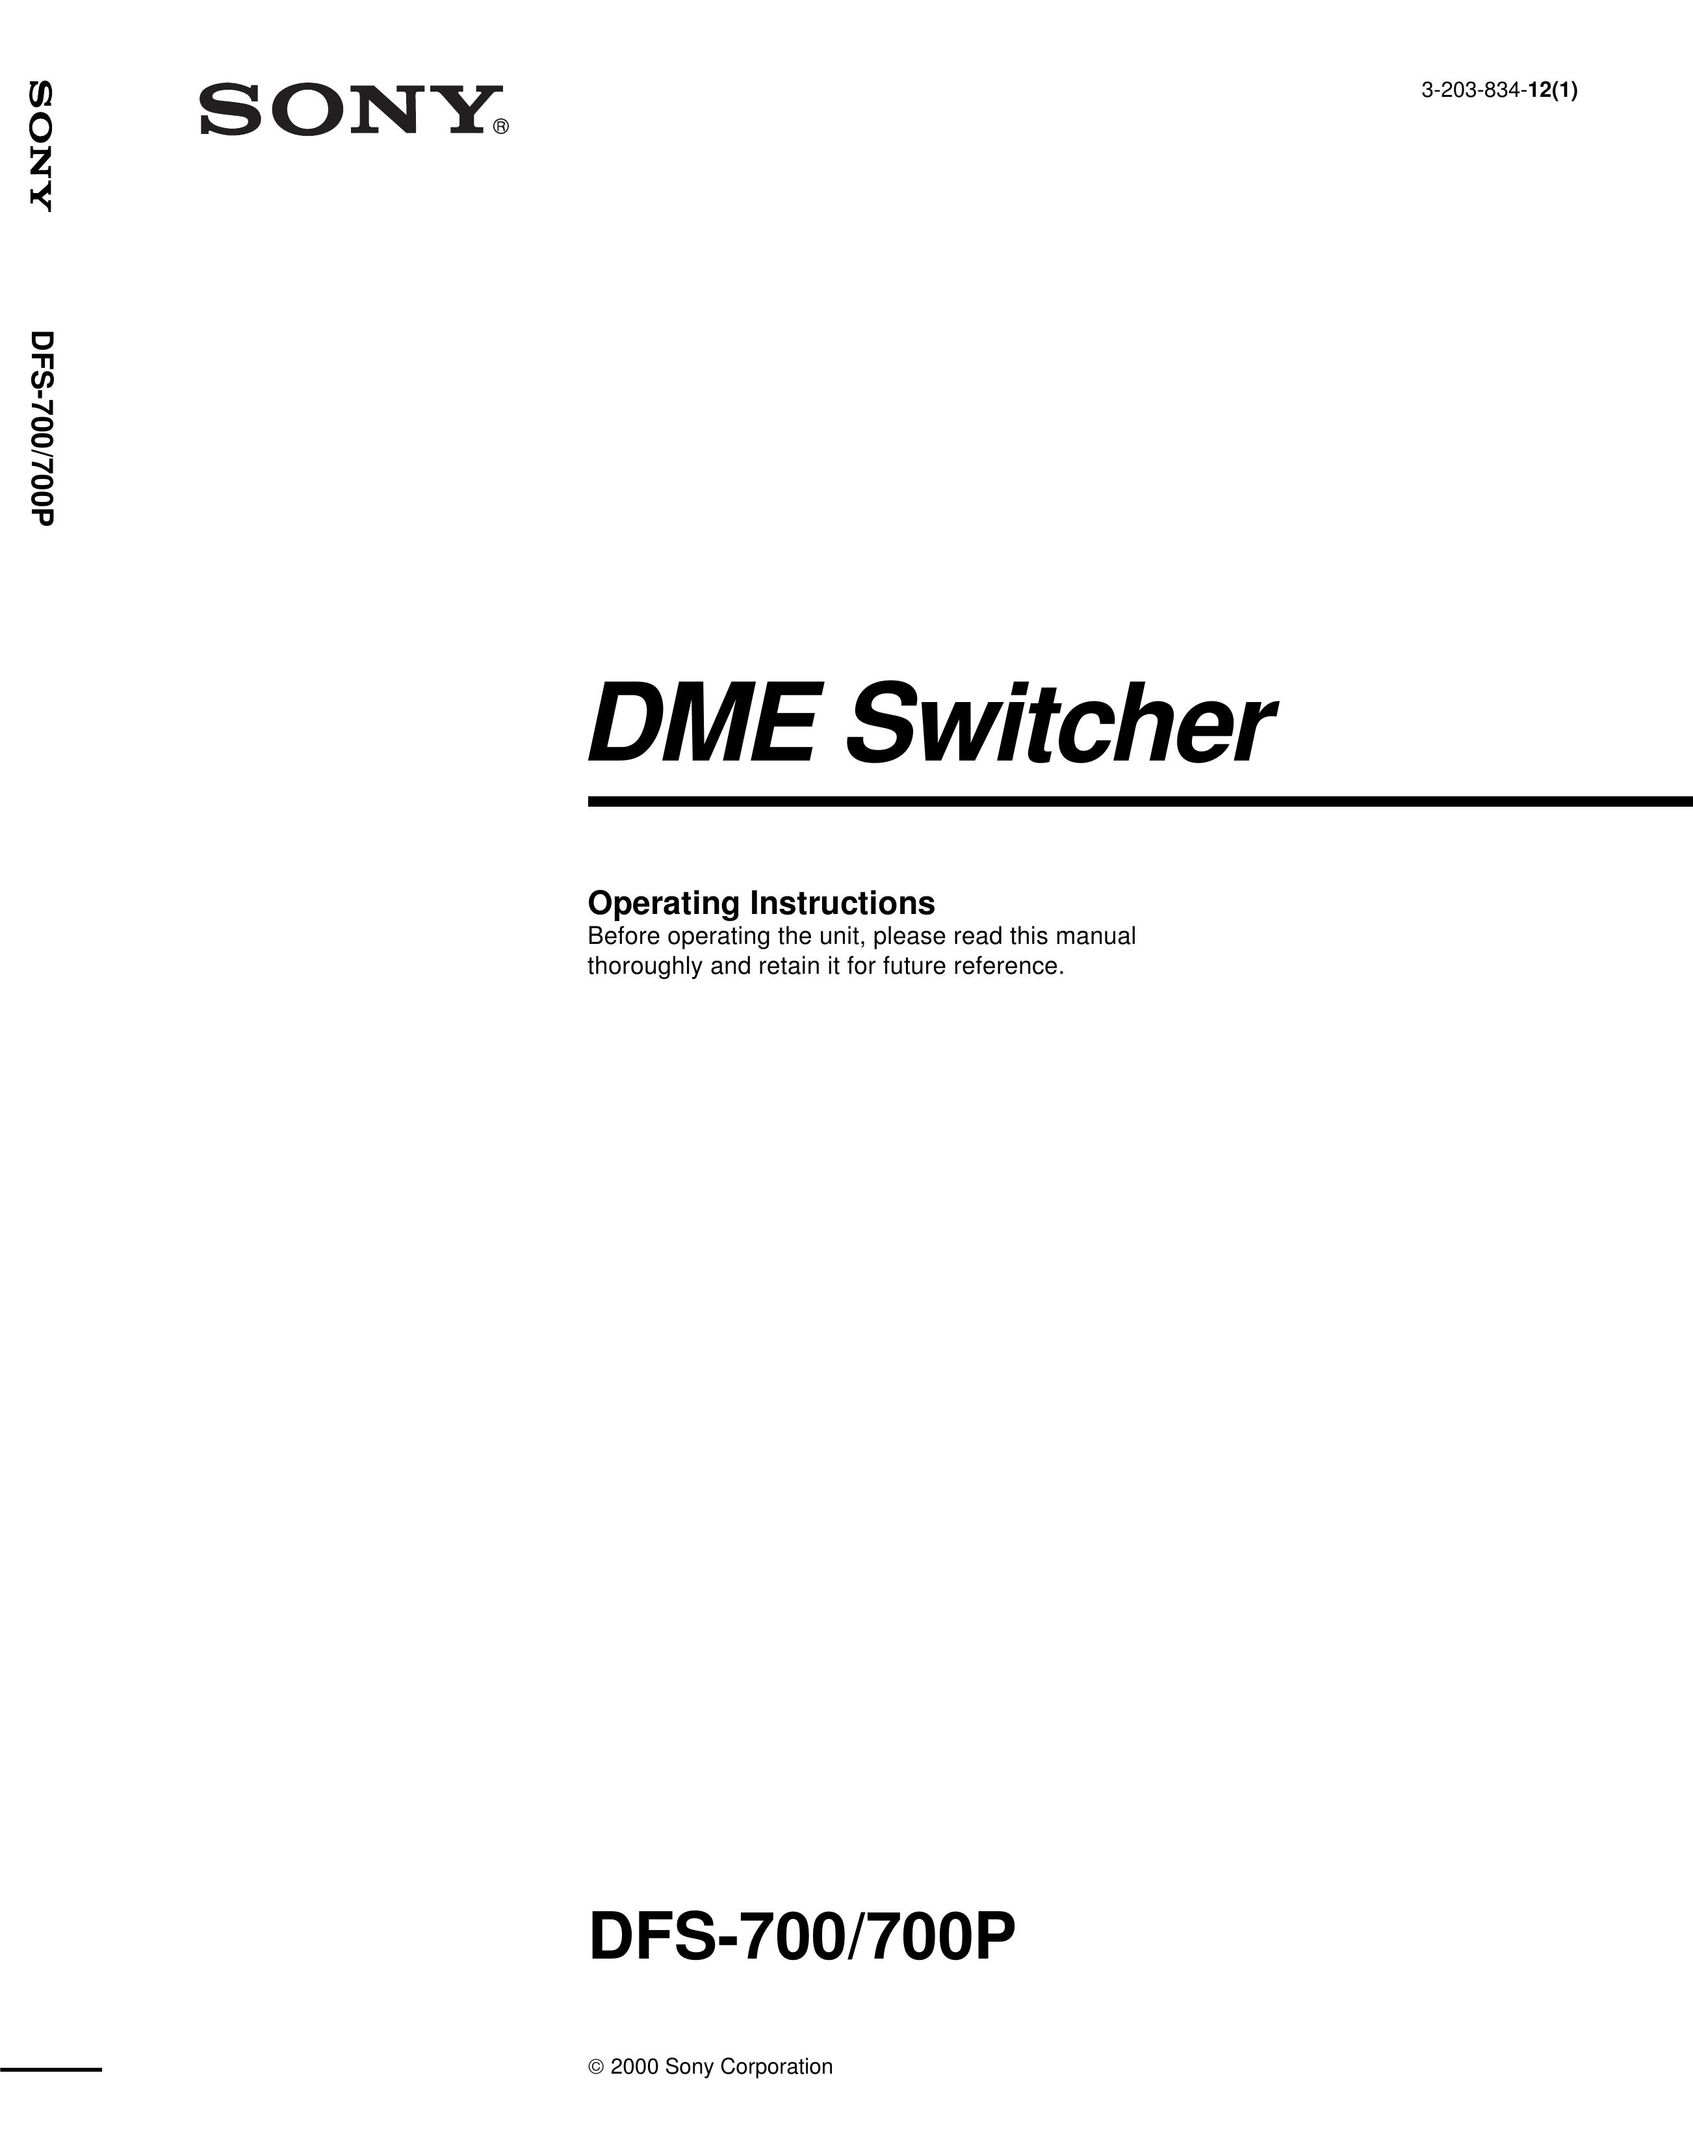 Sony DFS-700P Switch User Manual